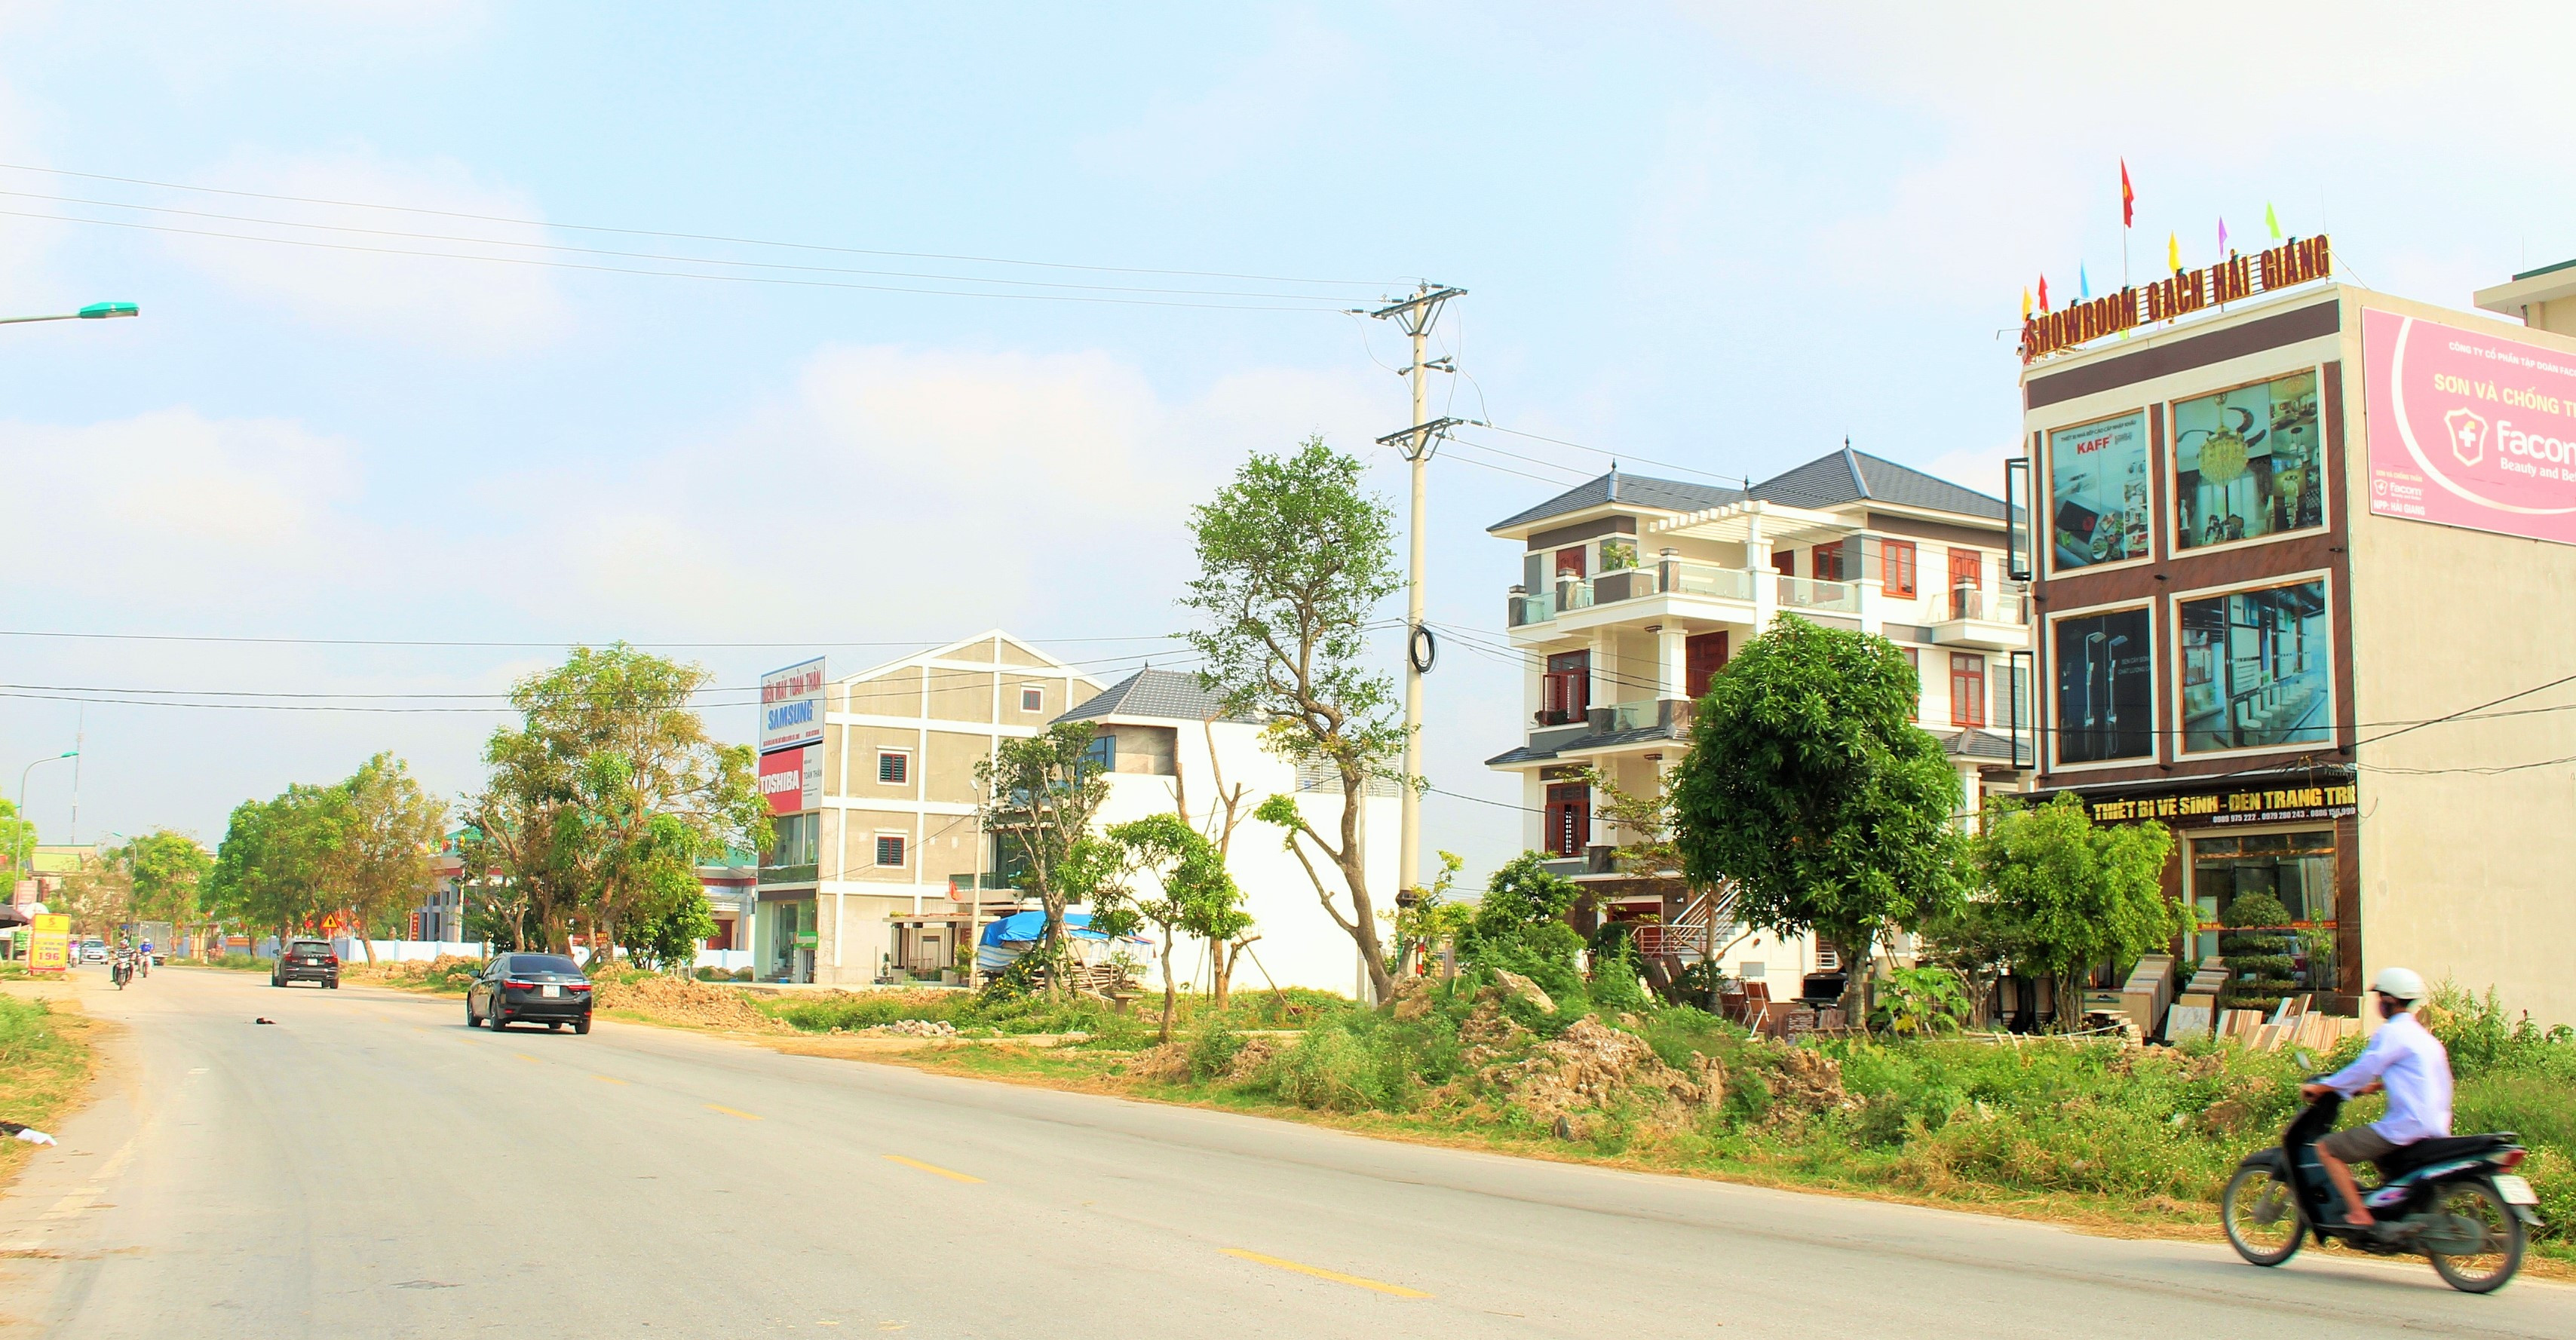 Bộ mặt nông thôn mới ở Quỳnh Hồng. Ảnh tư liệu PV